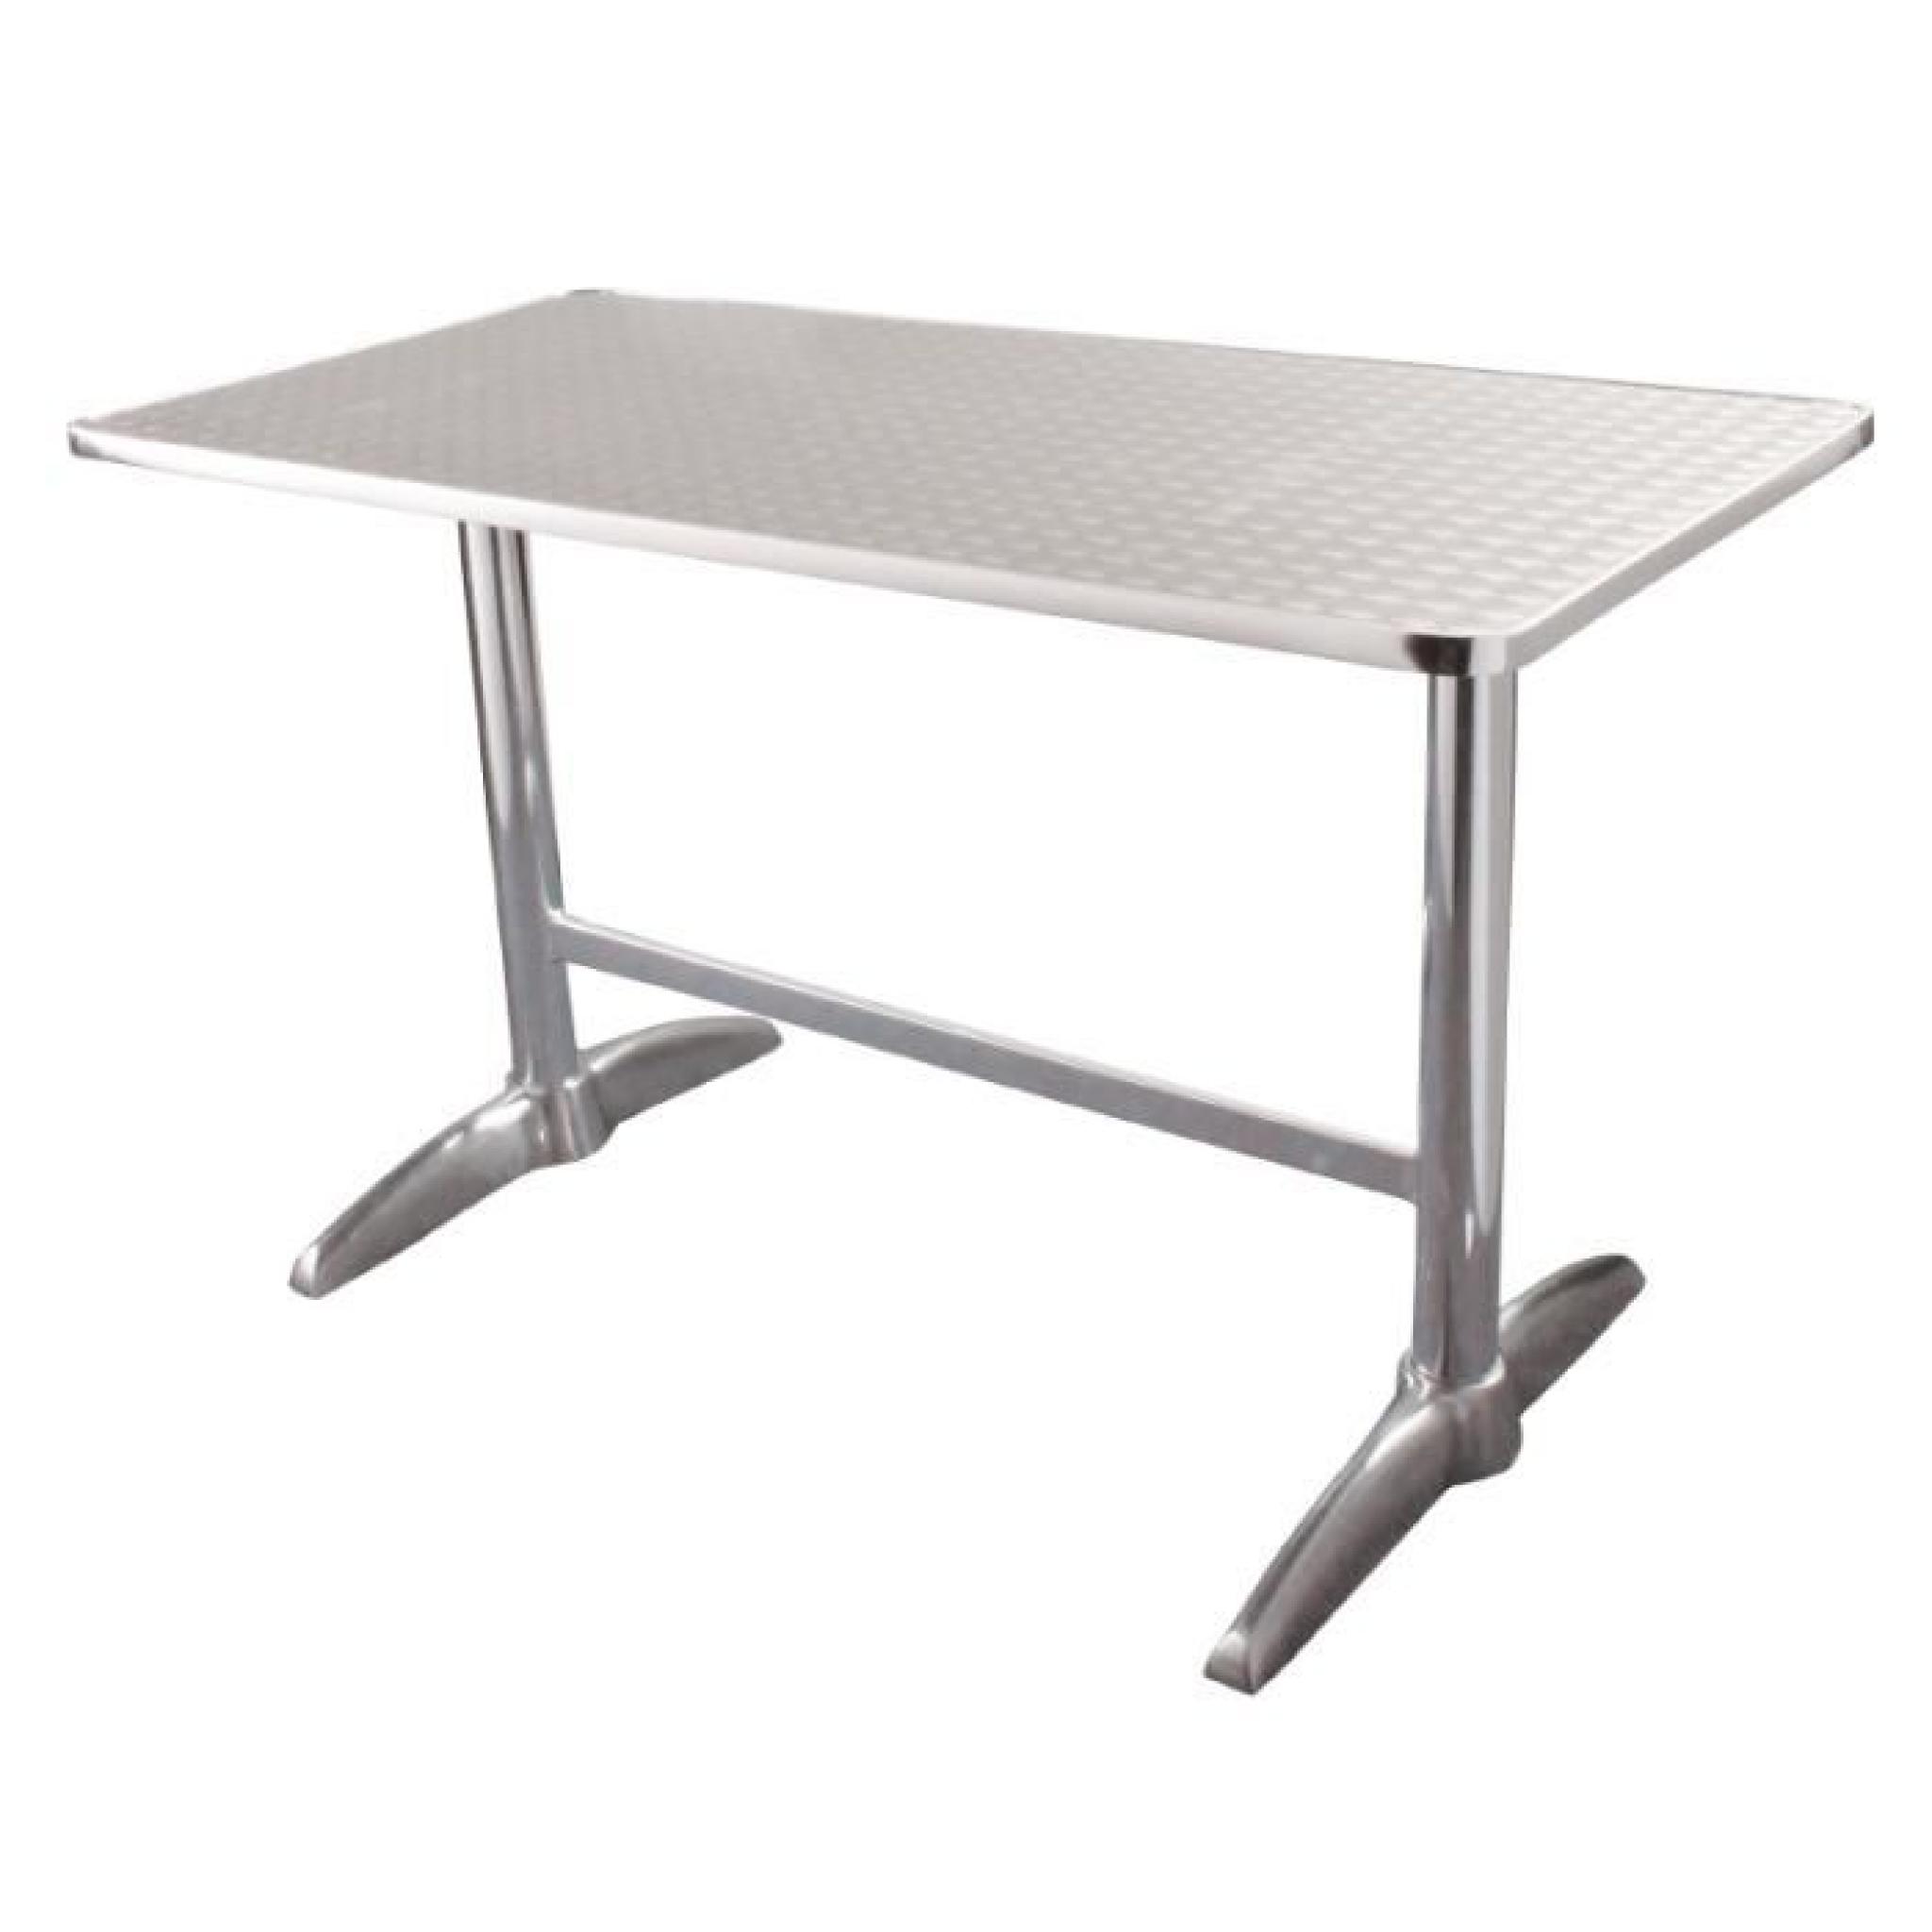 Table rectangulaire 1200 x 600mm à deux pieds Bolero